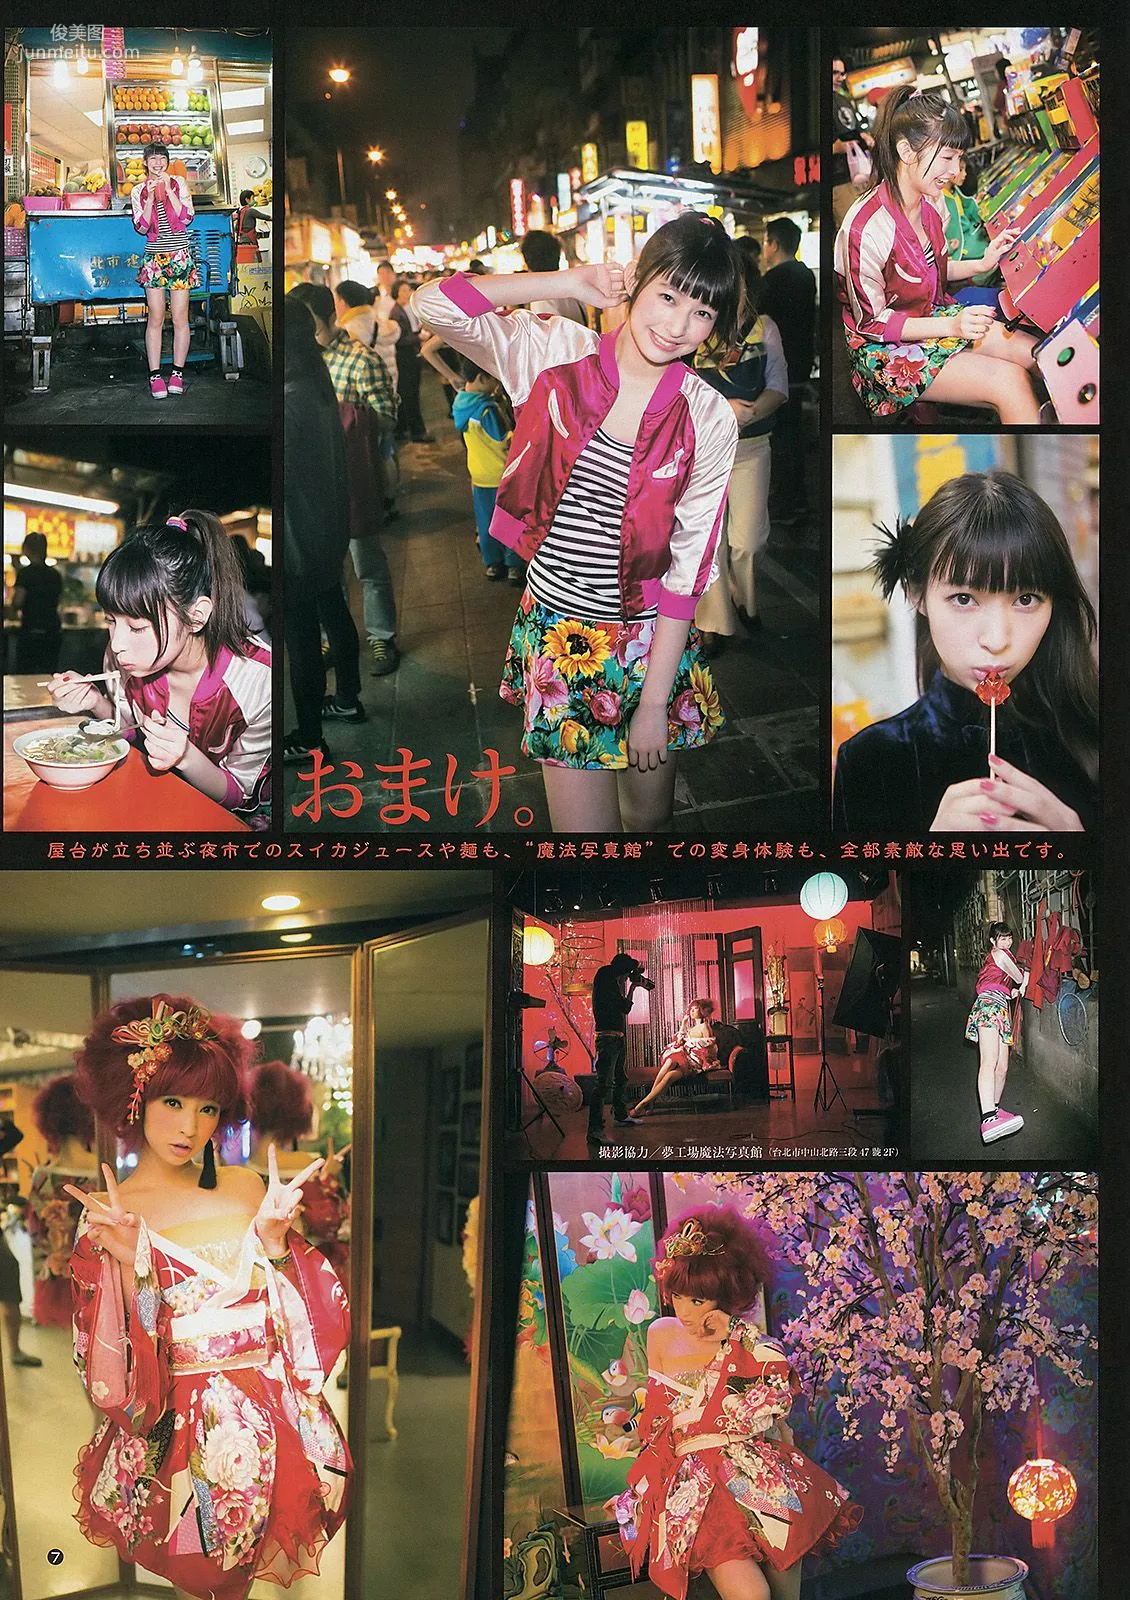 日南響子 中村静香 ギャルコン準グランプリガールズ [Weekly Young Jump] 2013年No.19 写真杂志8